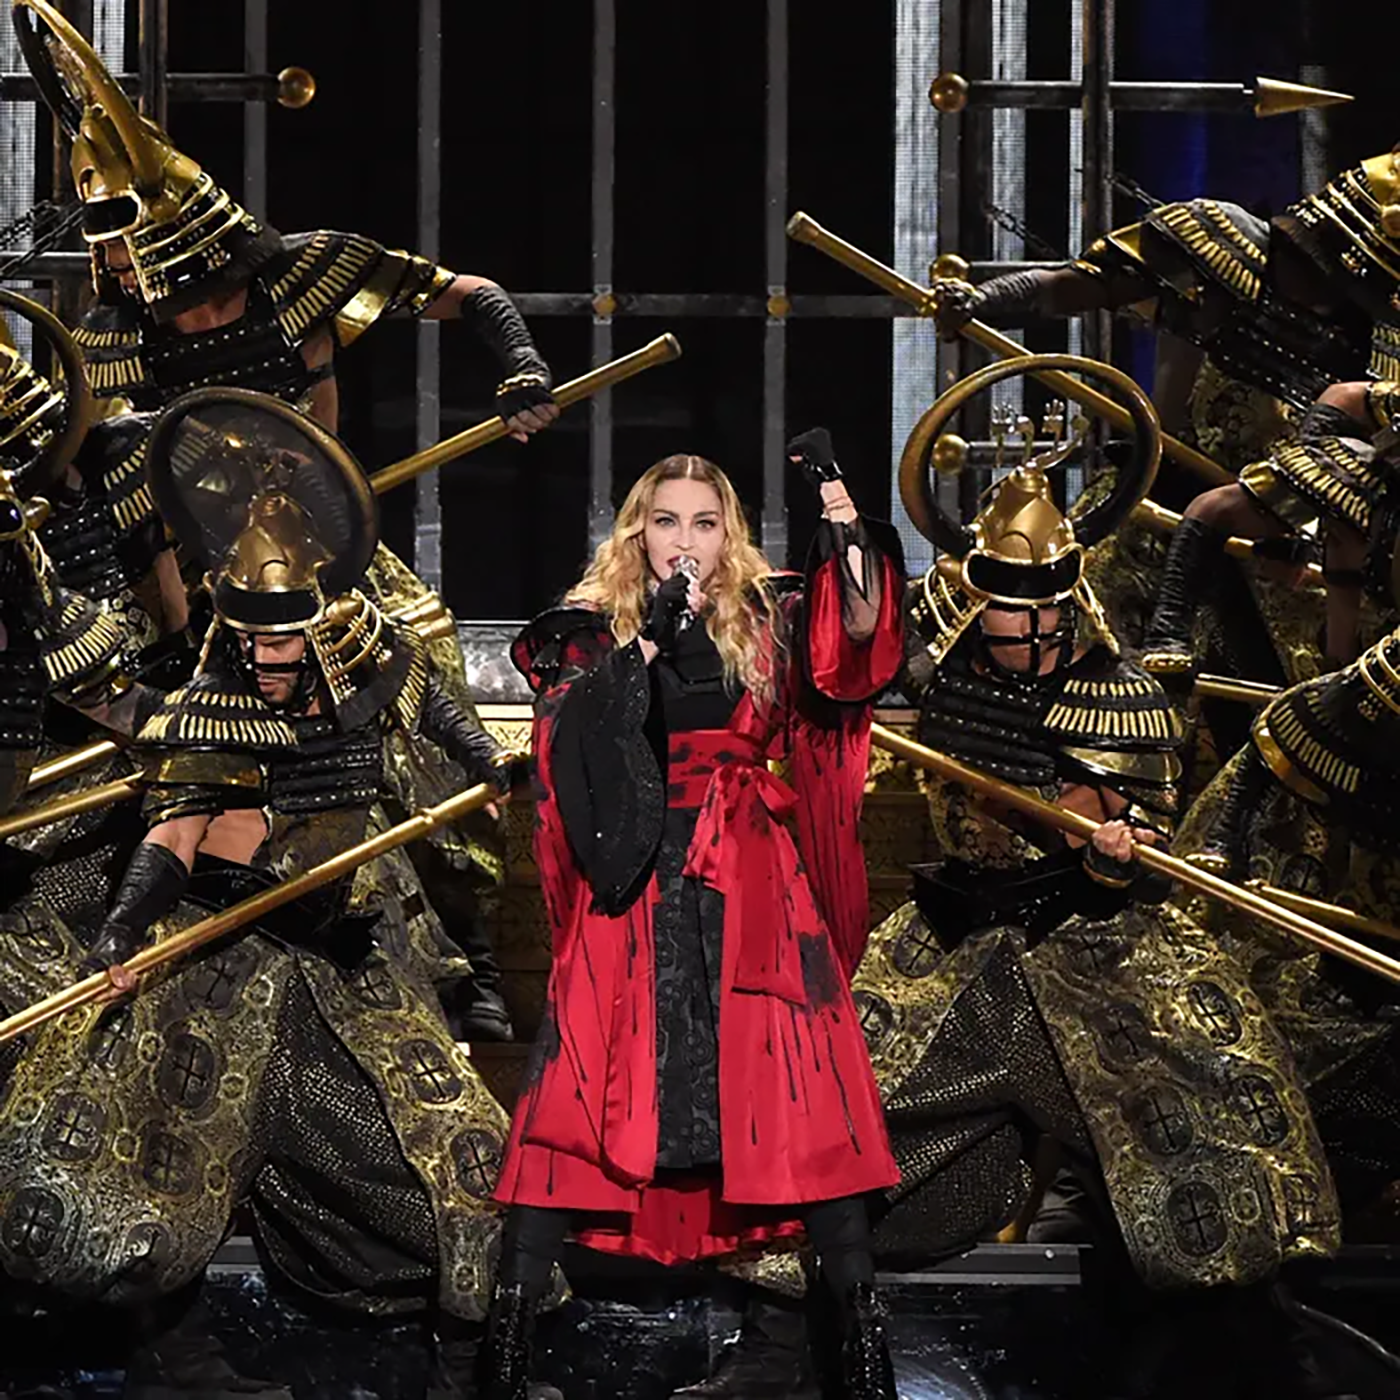 Lauren Urstadt costume design for Madonna and her dancers in the Rebel Heart Tour